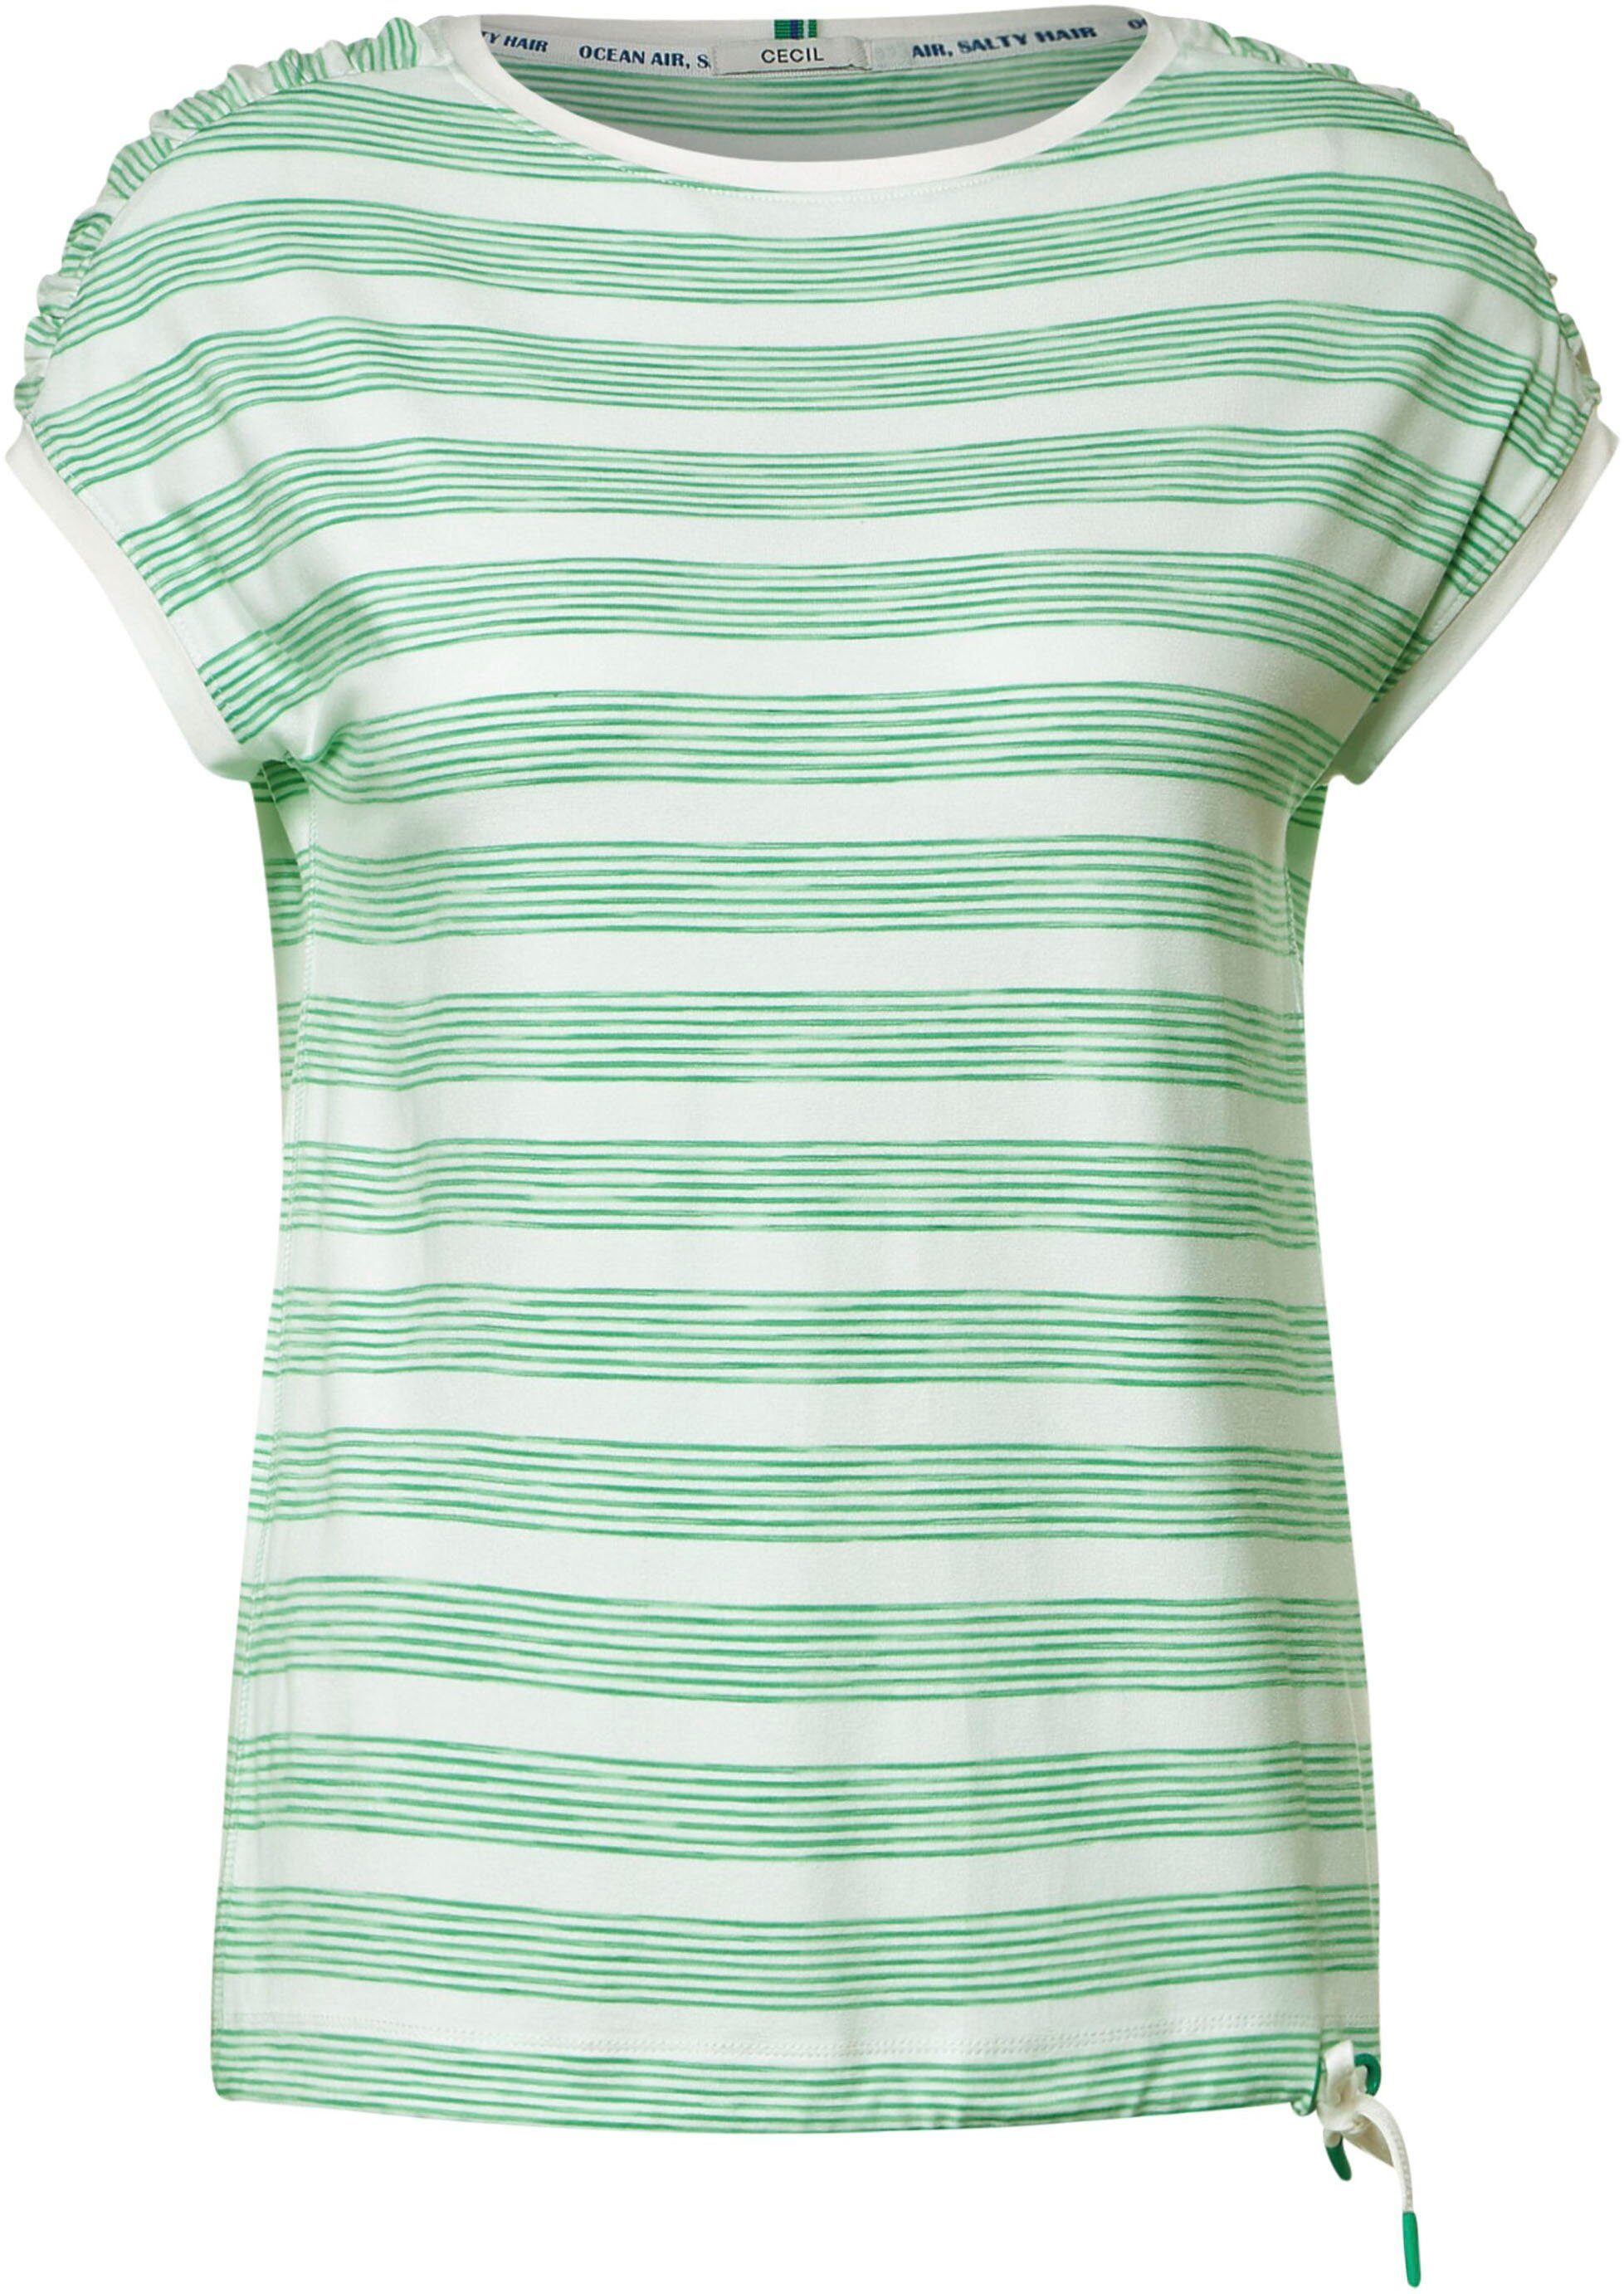 Cecil T-Shirt gerafften Schultern fresh mit green/white